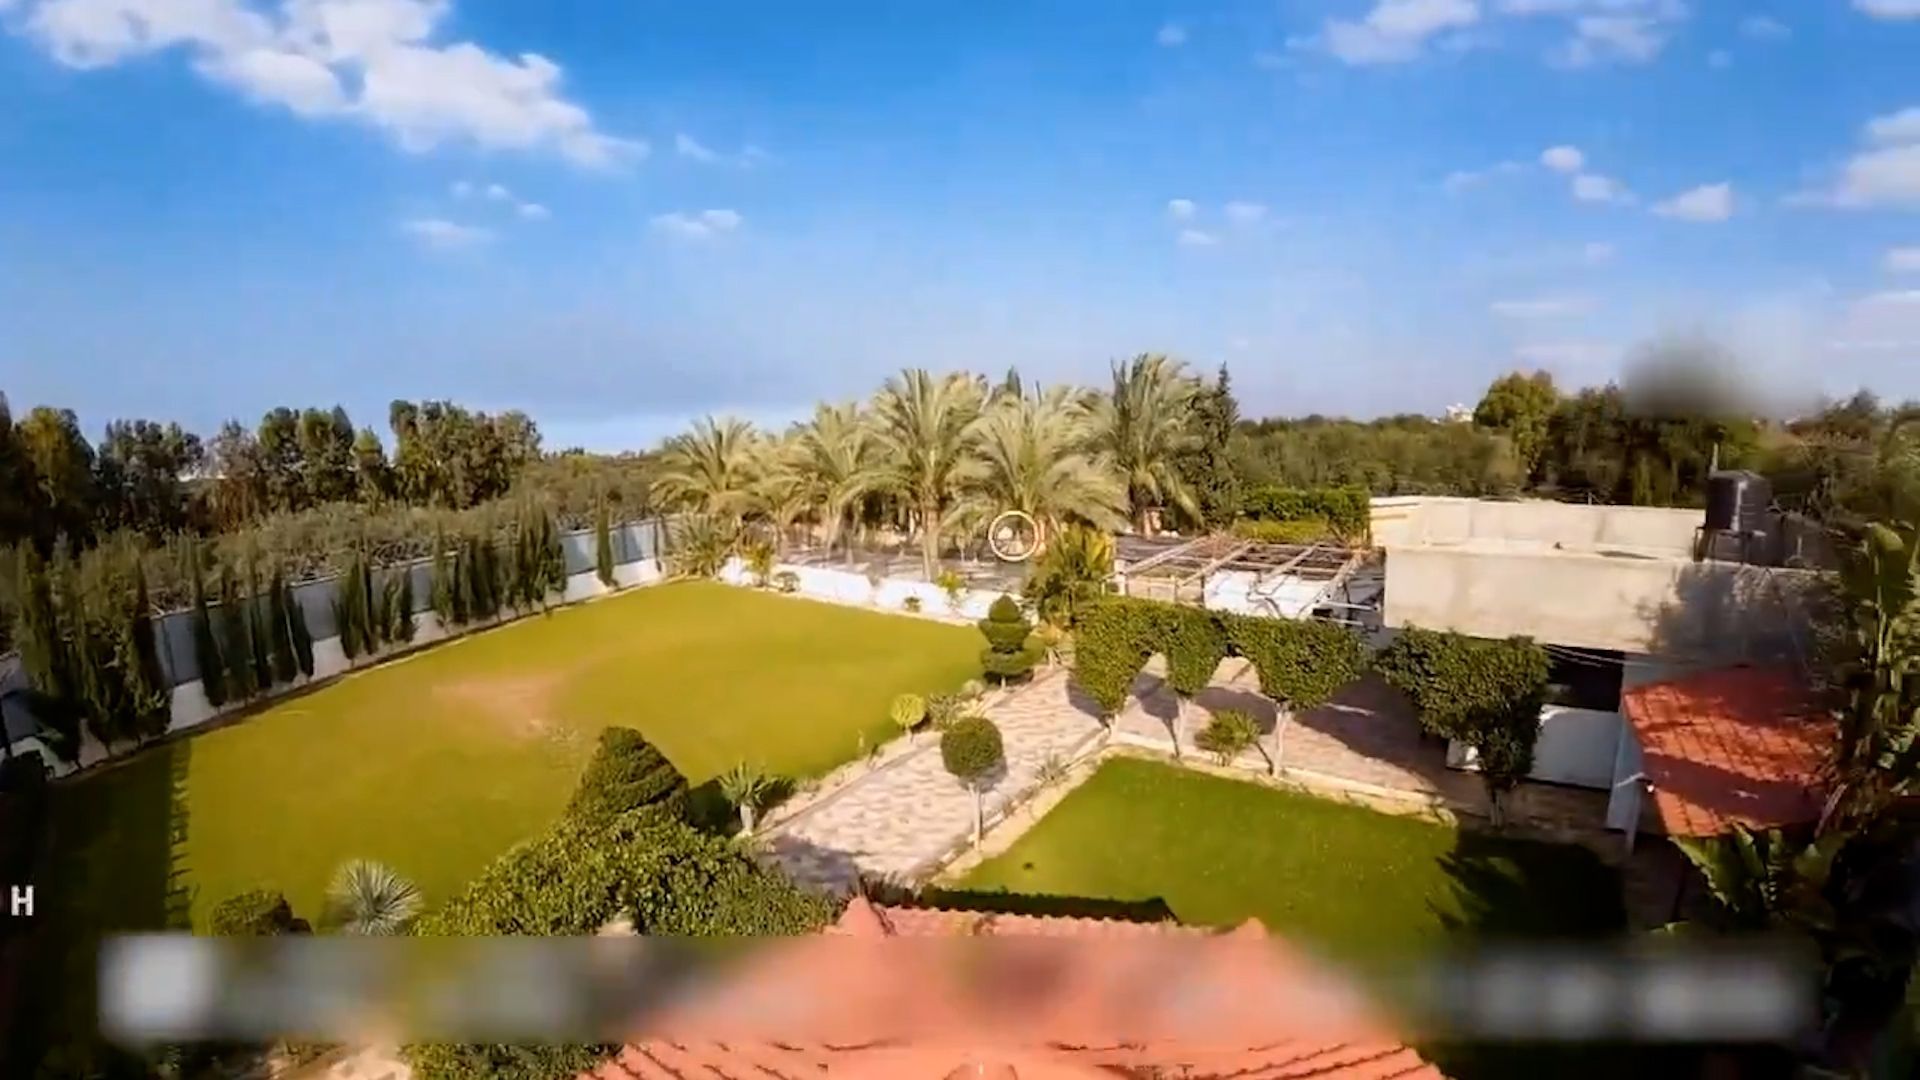 Palmen, Pool und Kunst: Israel zeigt das Luxus-Leben der Hamas-Chefs